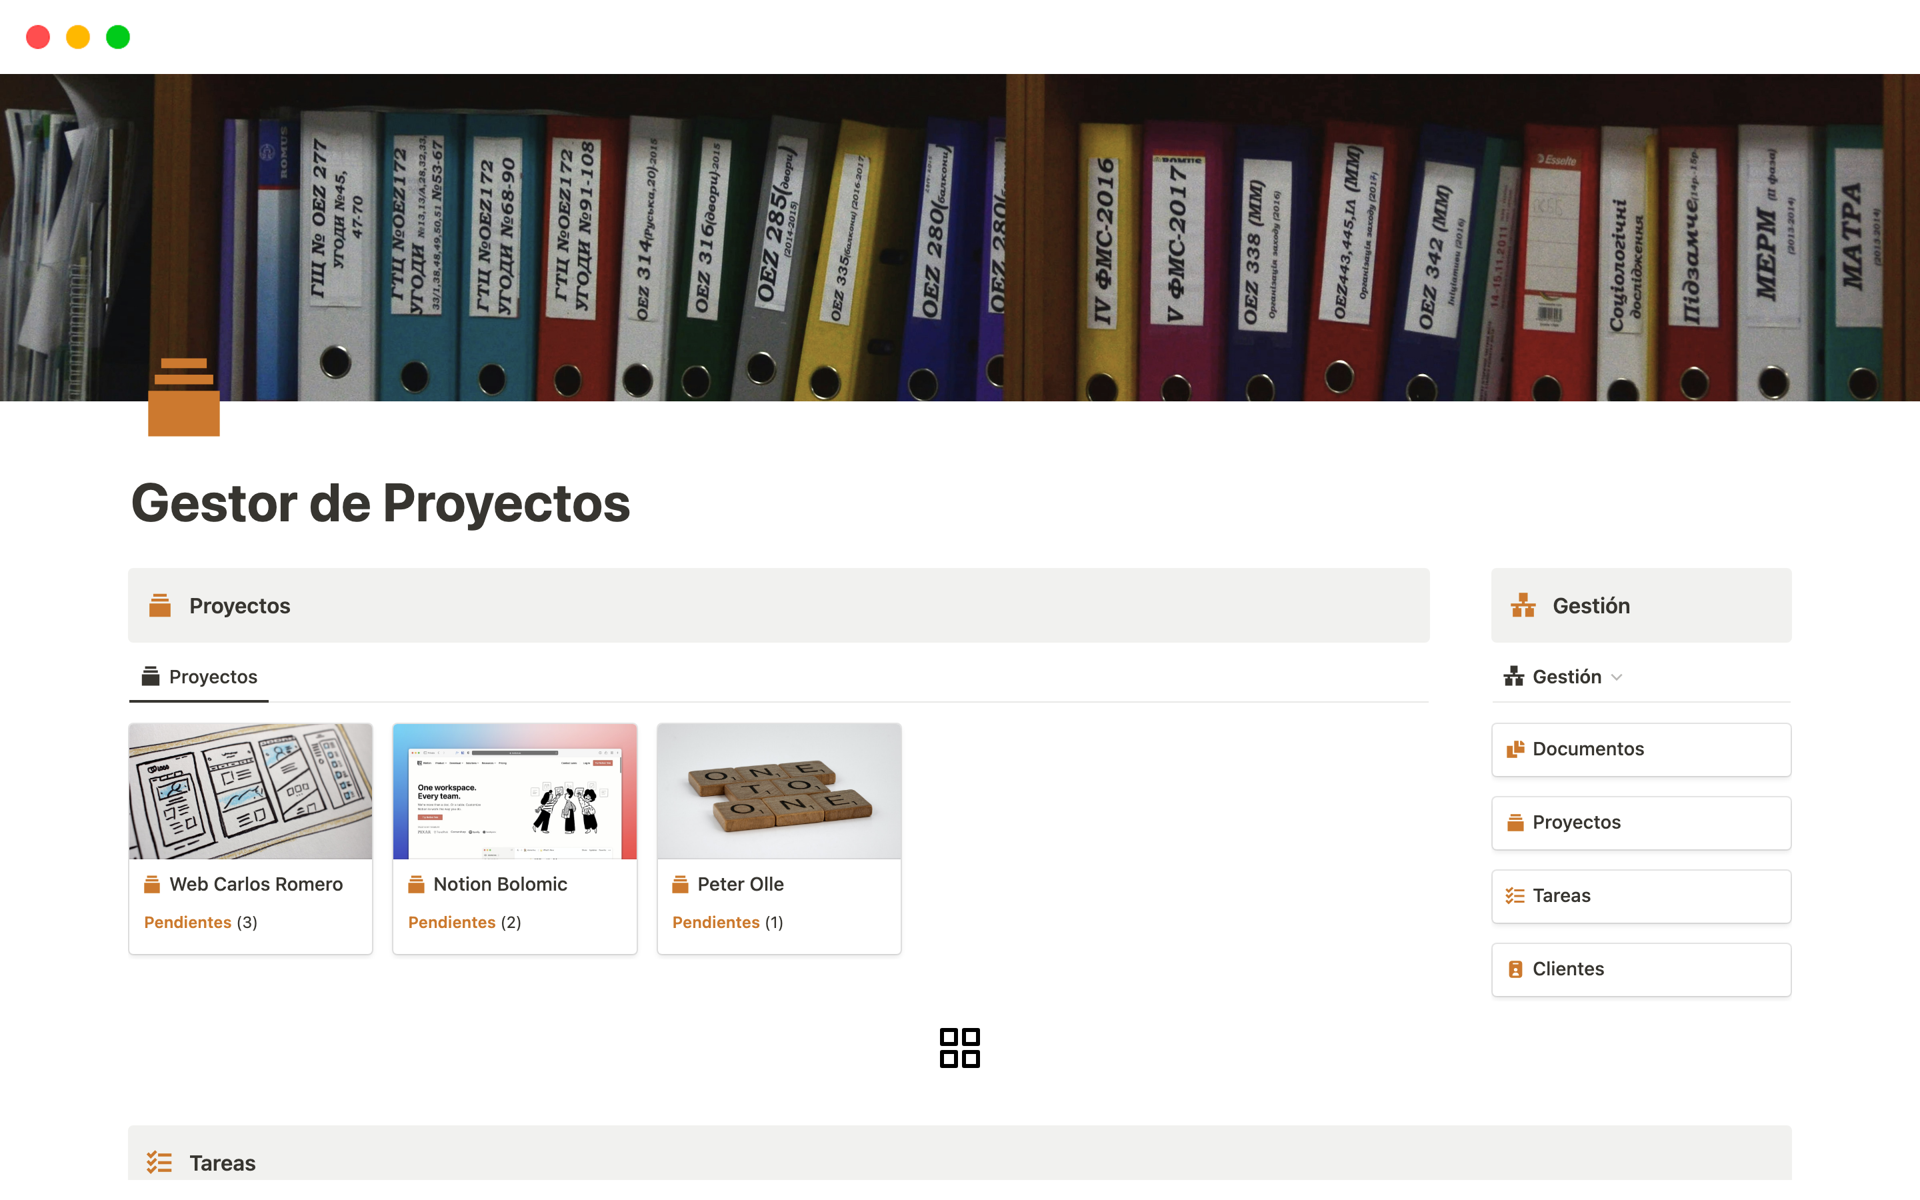 Eine Vorlagenvorschau für Gestor de Proyectos, Tareas, Documentos y Clientes